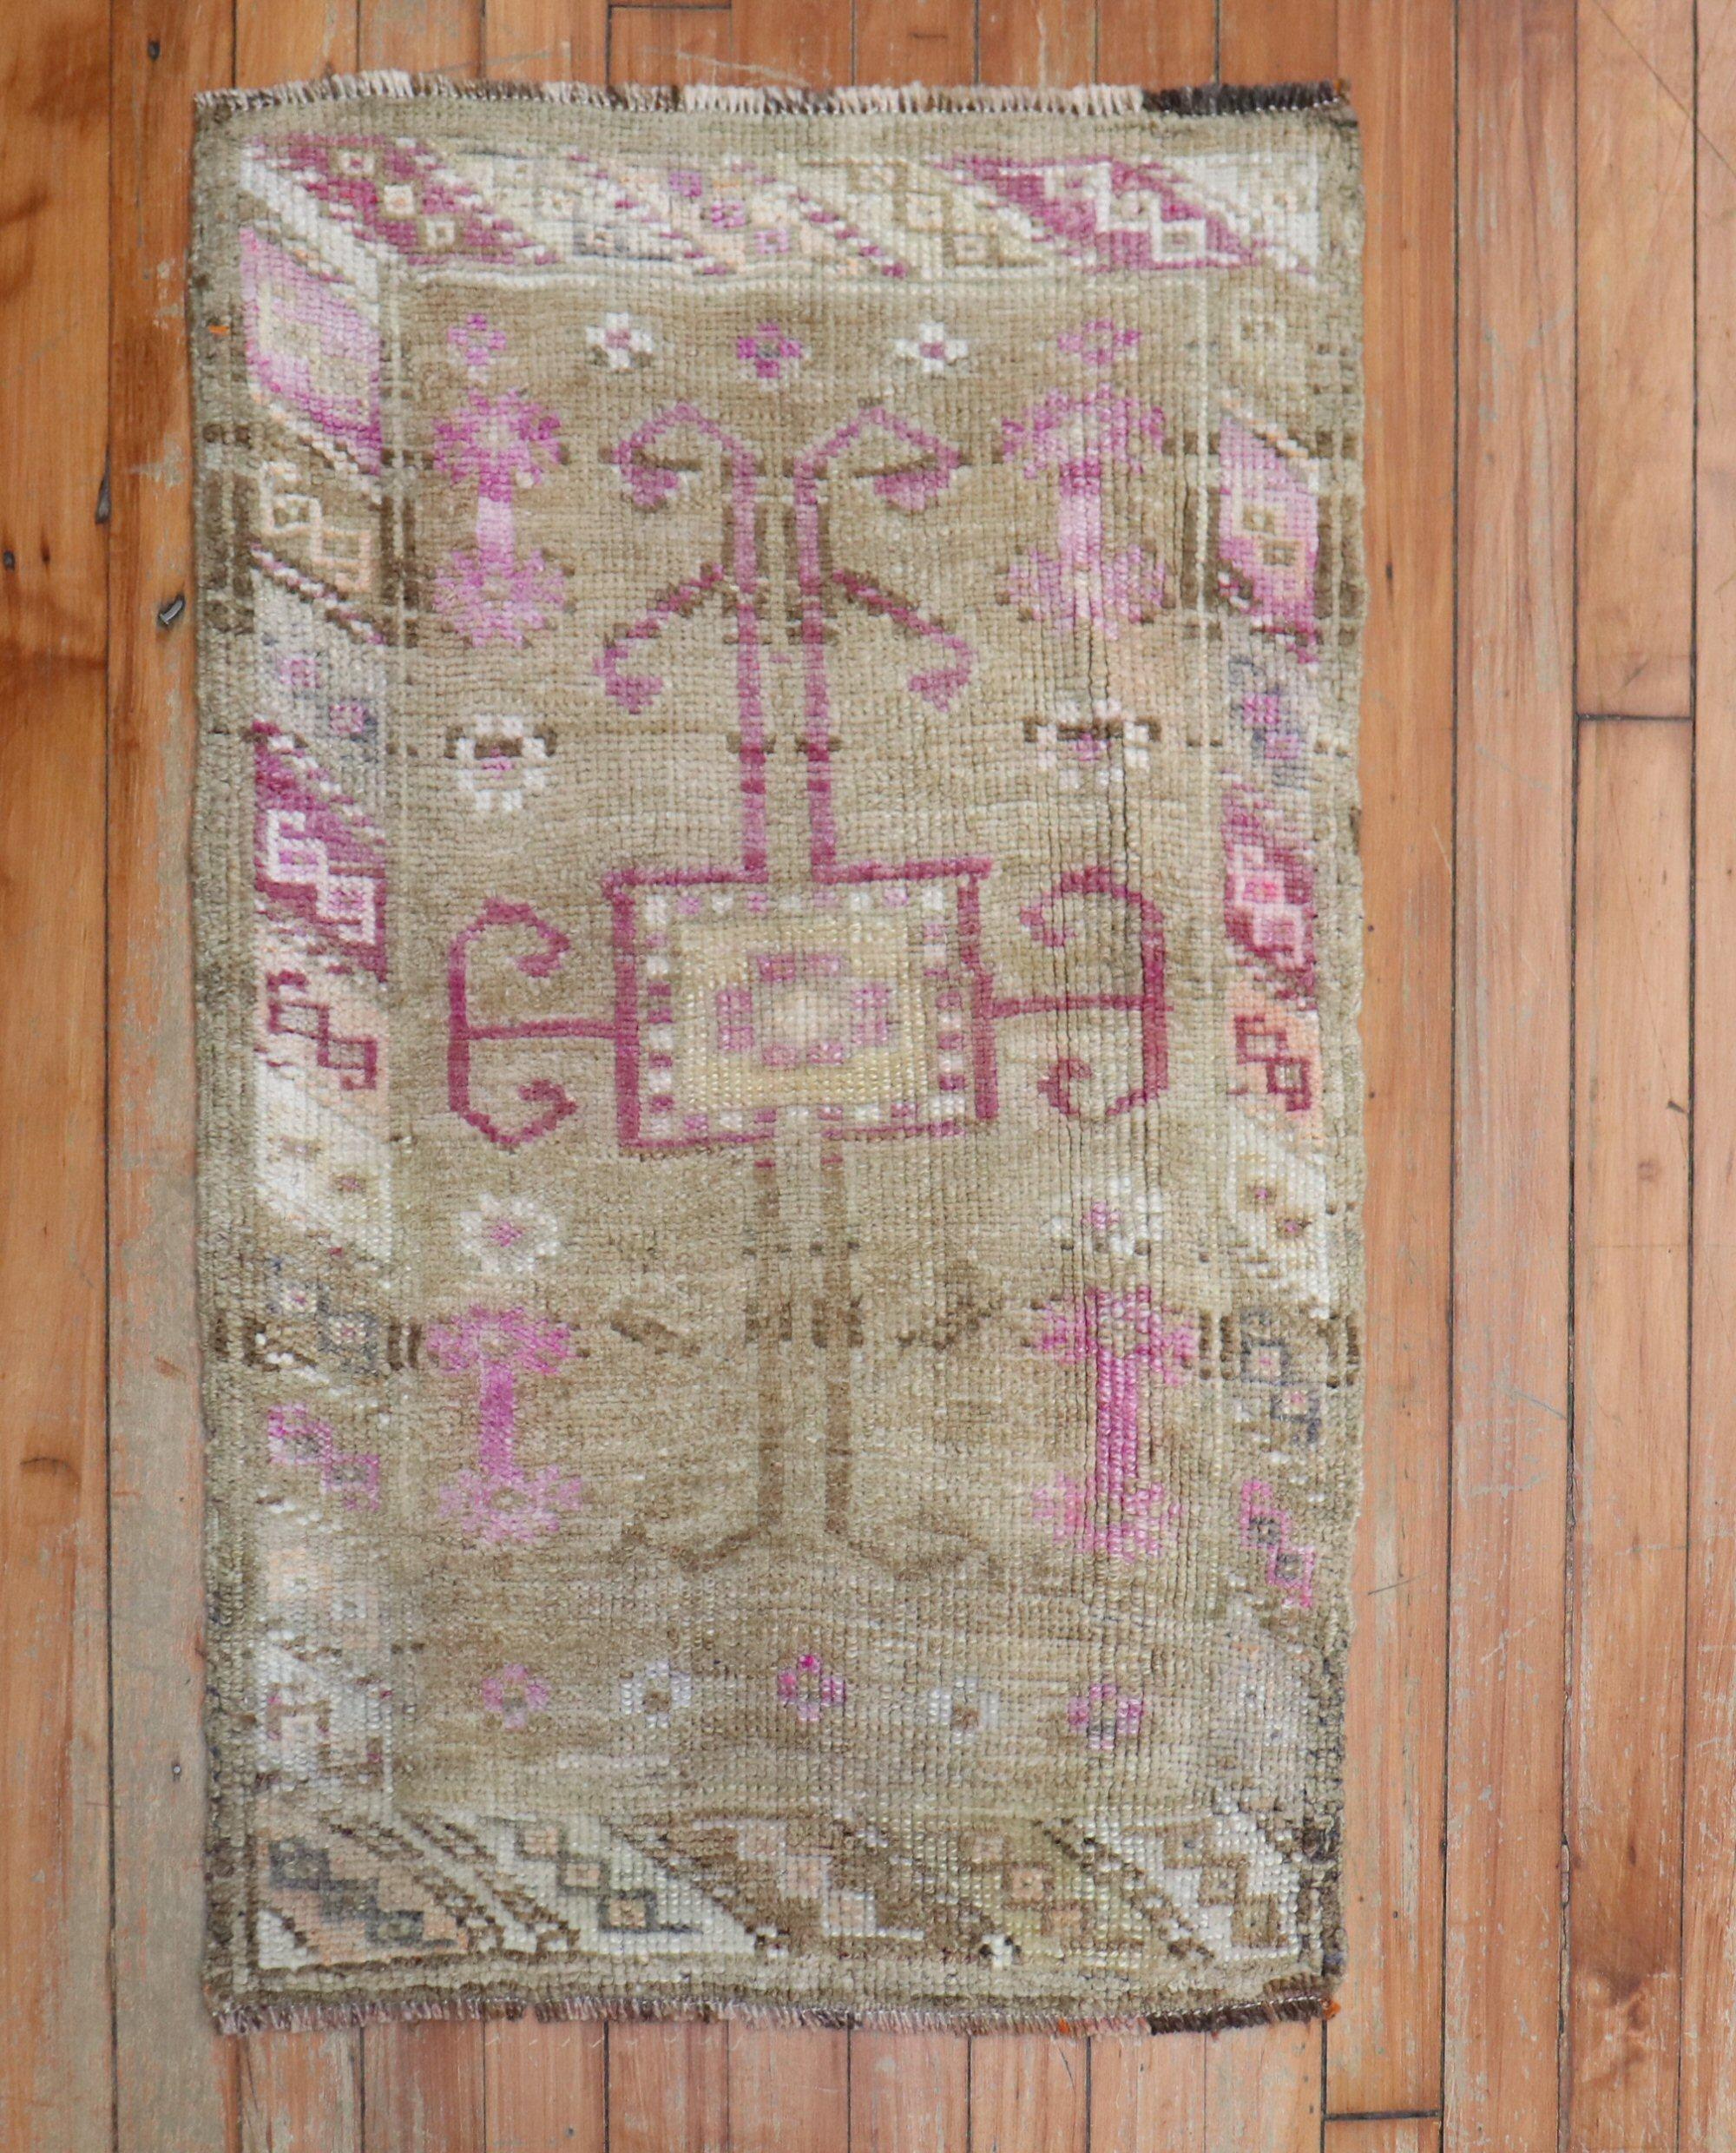 tapis turc miniature du milieu du 20e siècle avec des touches de rose sur un fond brun prédominant

Mesures : 1'9' x 2'9